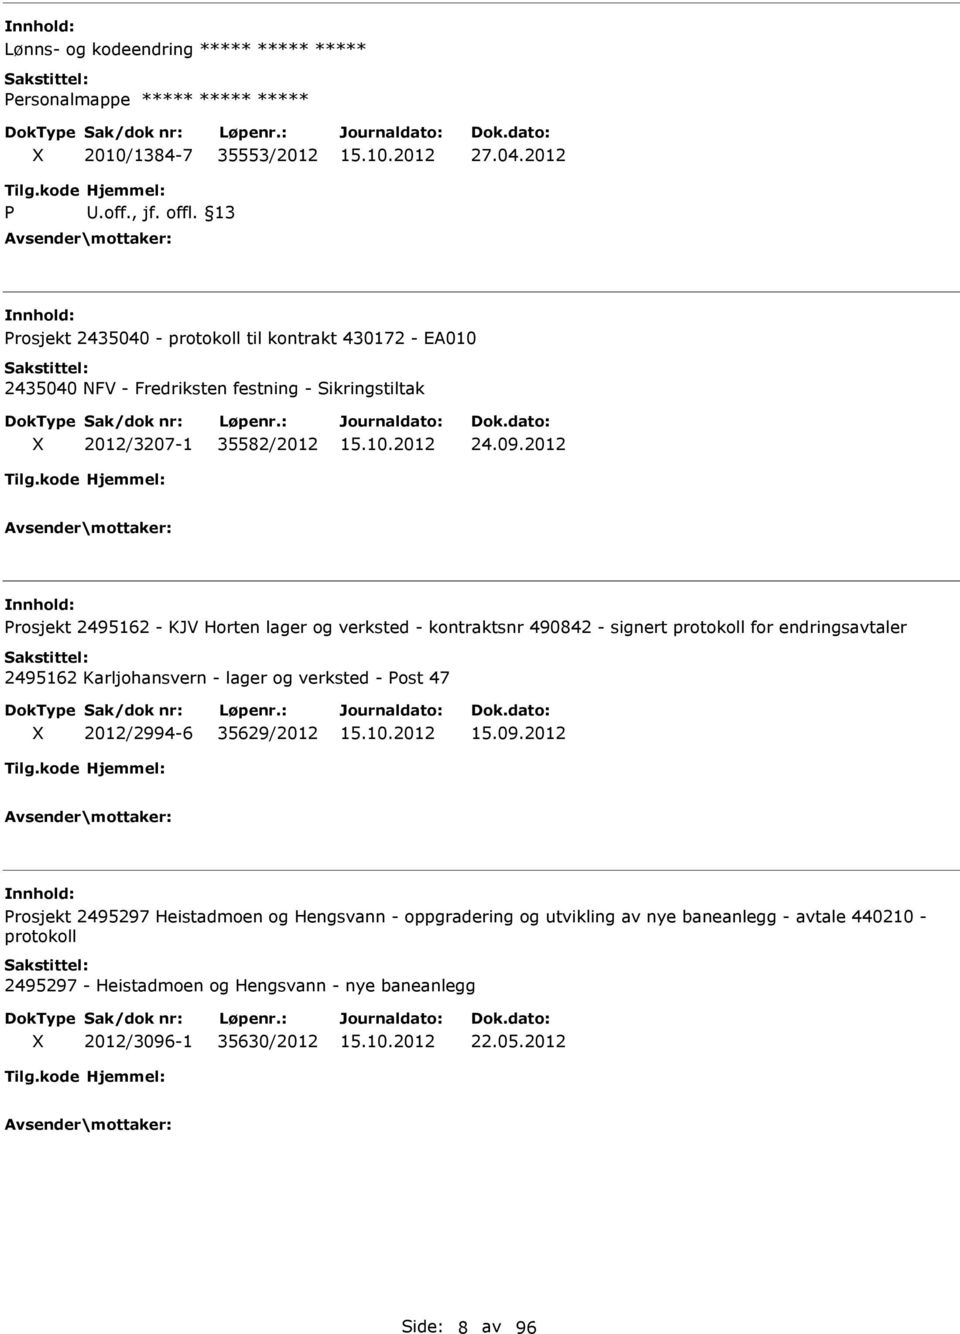 2012 rosjekt 2495162 - KJV Horten lager og verksted - kontraktsnr 490842 - signert protokoll for endringsavtaler 2495162 Karljohansvern - lager og verksted - ost